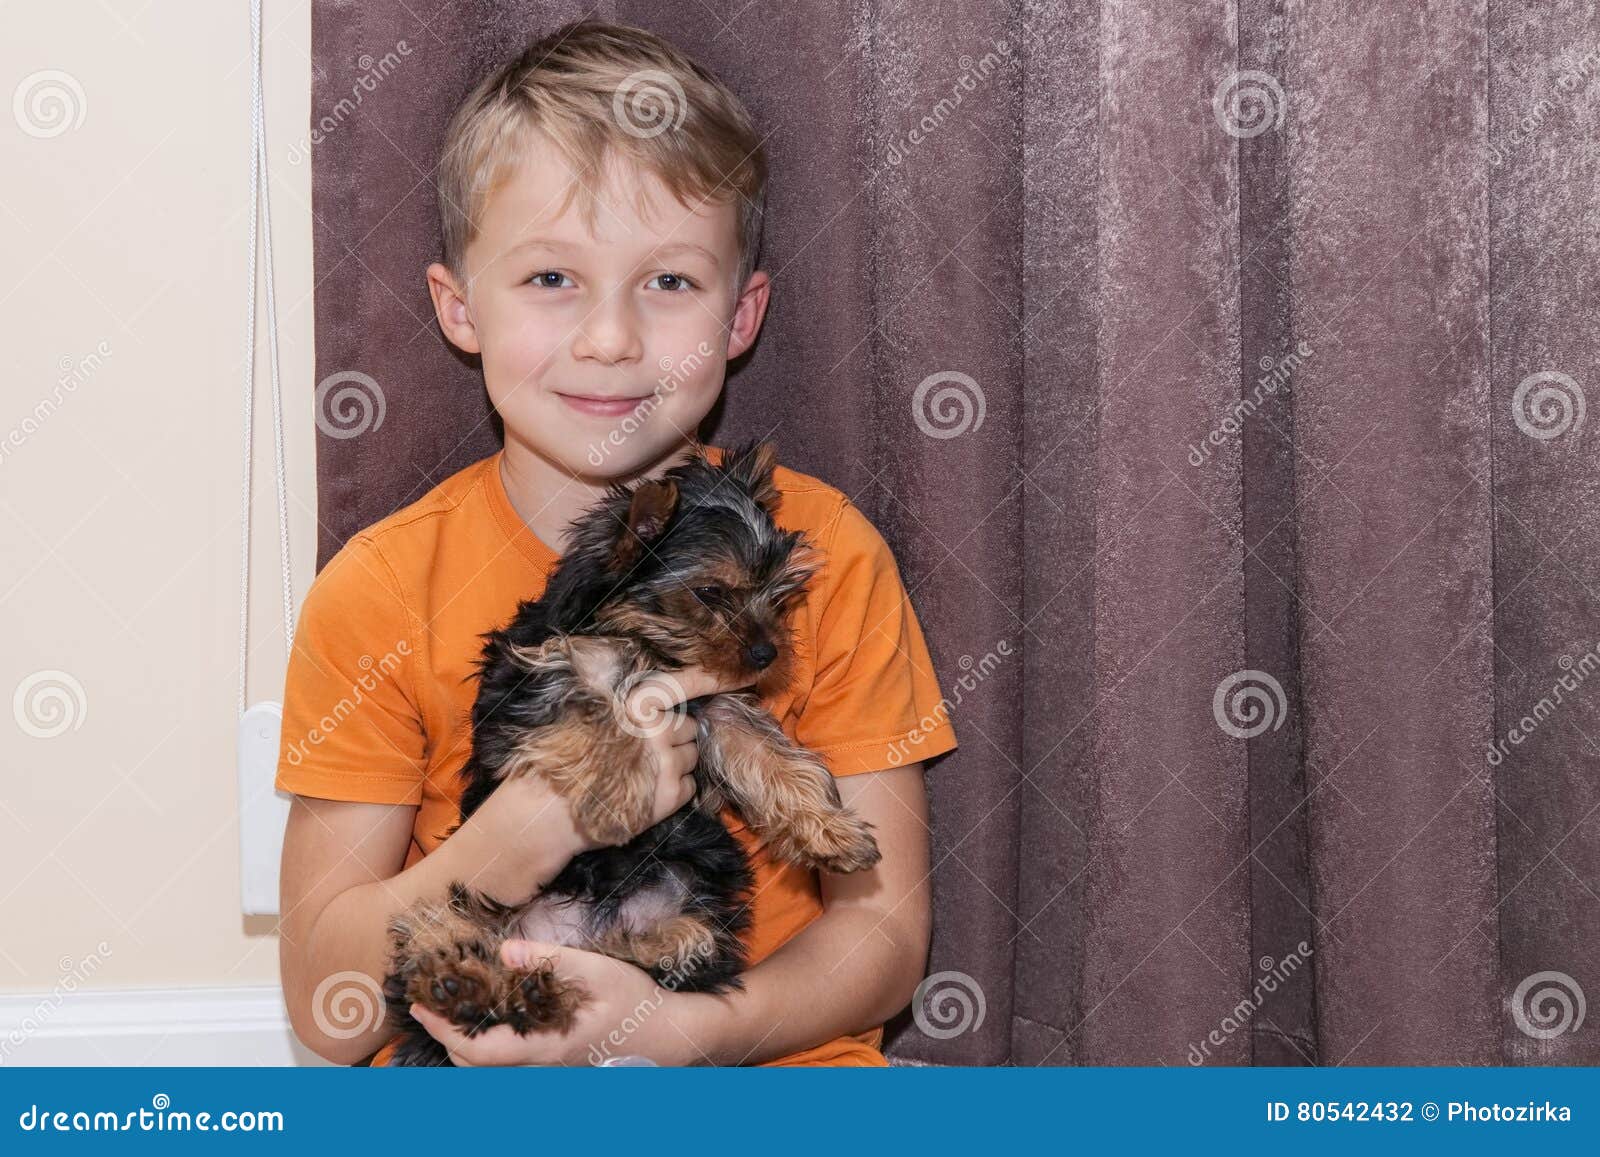 Мальчик держит собаку. Мальчик держит щенка. Мальчик держит собаку на руках. Ребенок держит щенка на руках. Фото мальчик держит собаку.